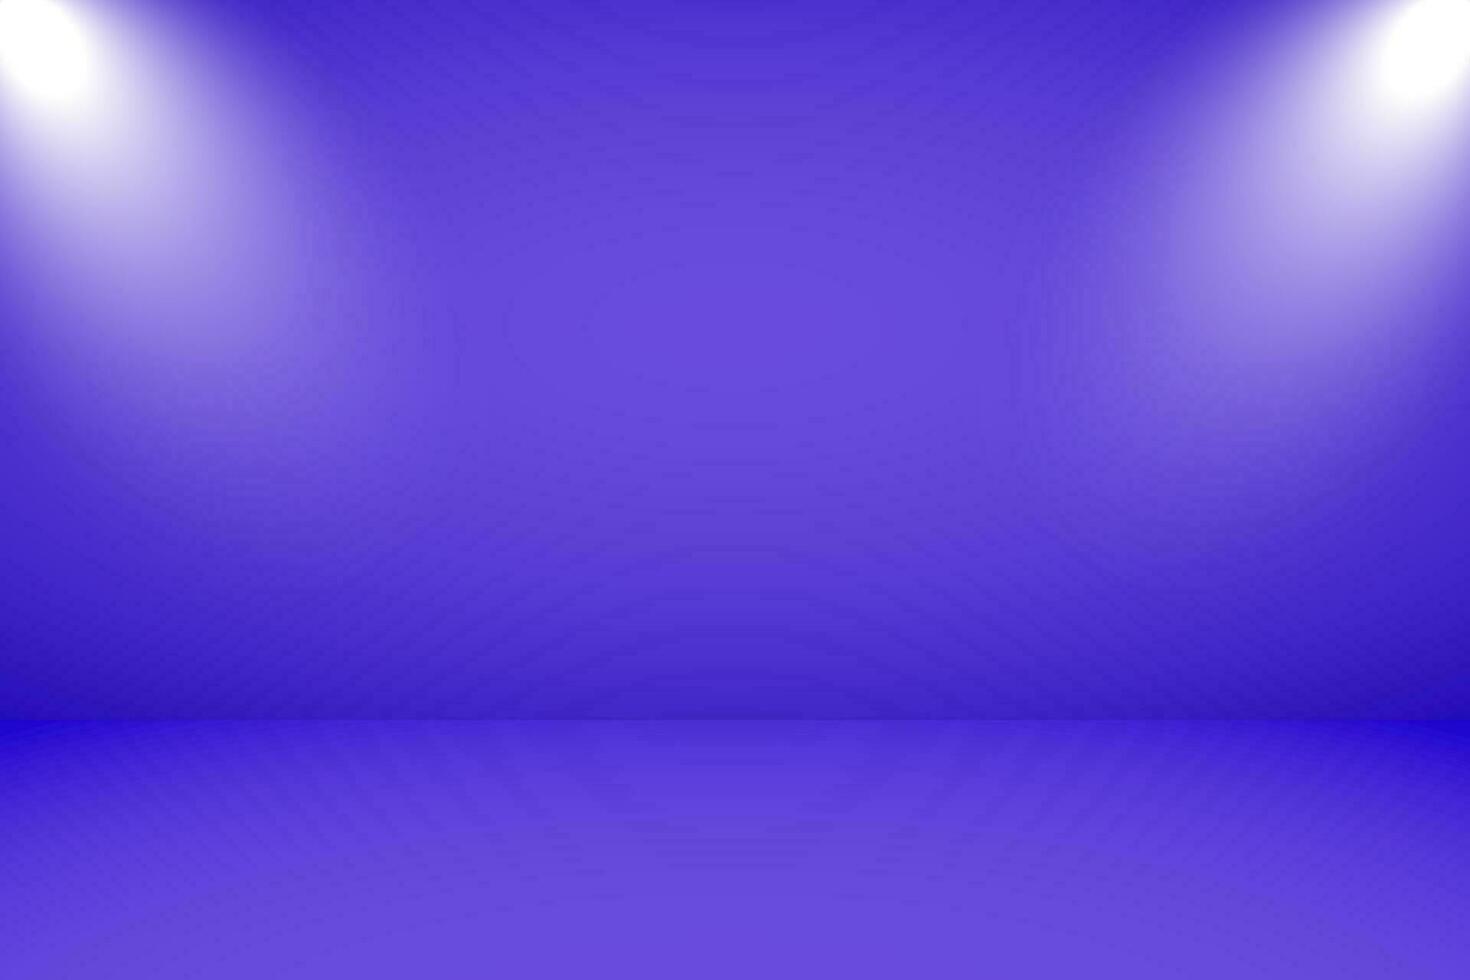 Vektor Illustration von leeren Studio mit Beleuchtung und lila Hintergrund zum Produkt Anzeige